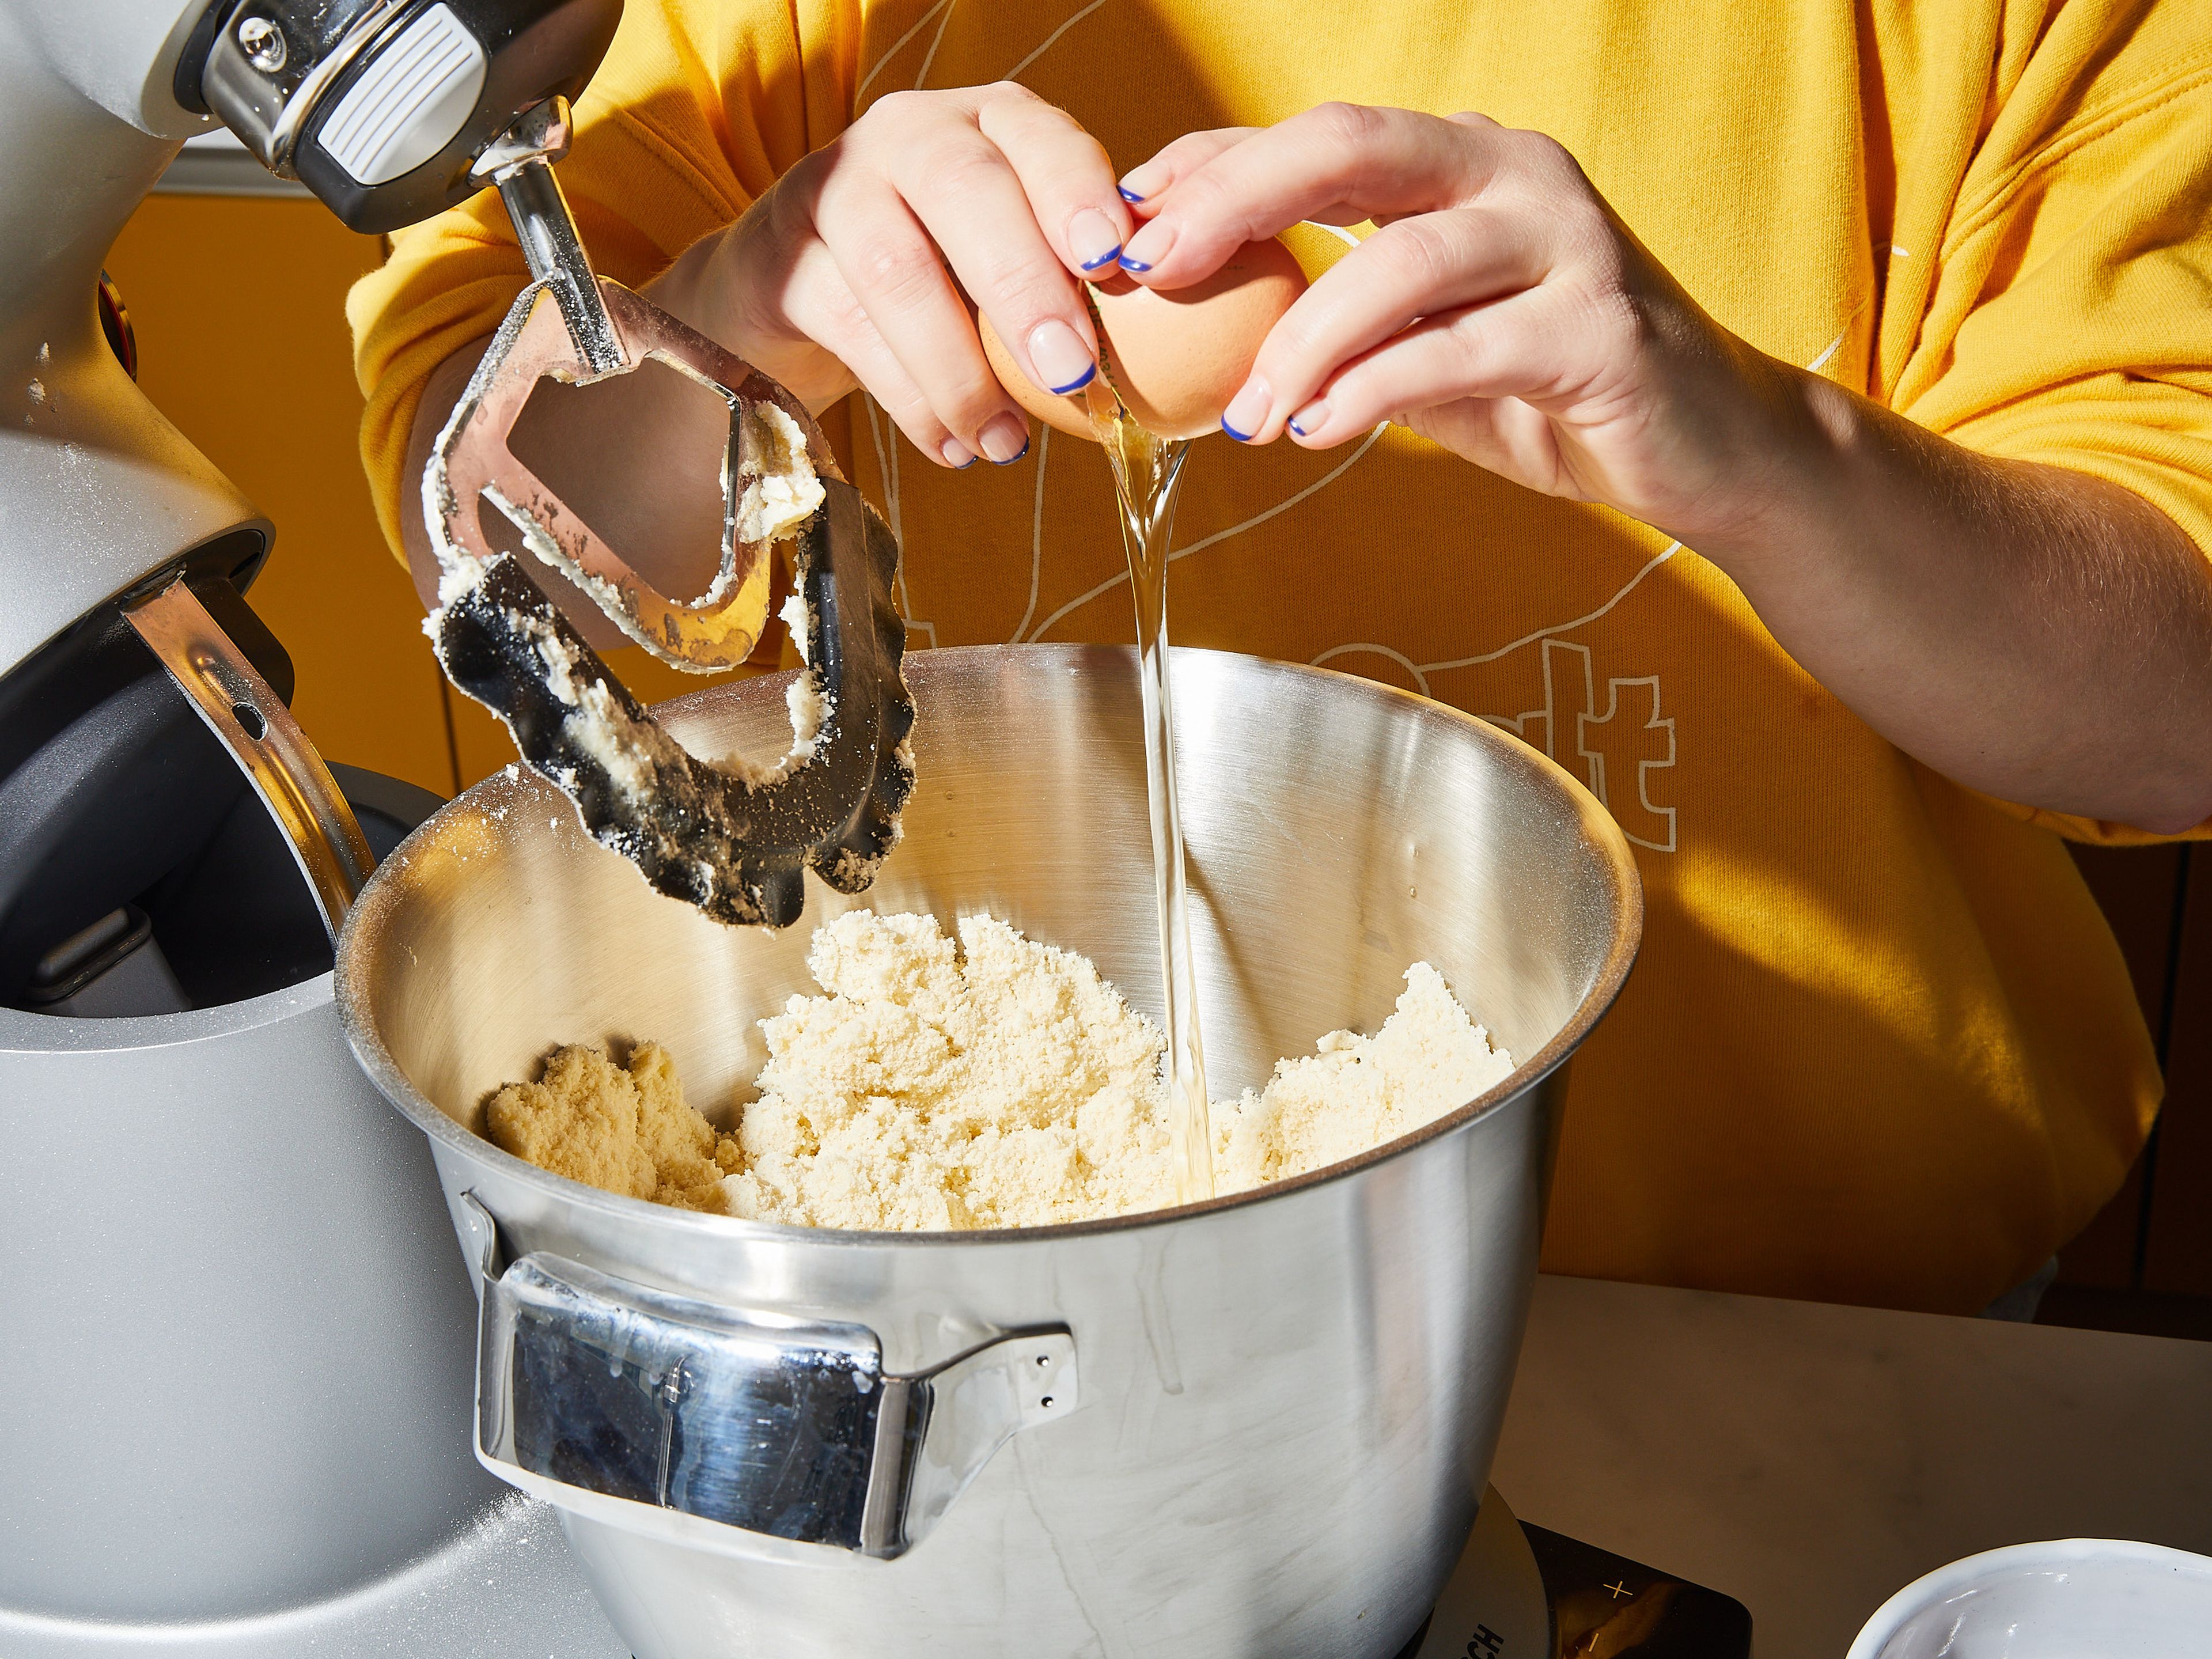 Mehl, Zucker, Vanillezucker, Backpulver und Salz in einer großen Schüssel miteinander vermengen. Mit einem Handrührgerät mit Knethaken verrühren und nach und nach die Butter einarbeiten. Sobald alles gut vermischt ist, die Eier nacheinander unterrühren. Den Mürbeteig in Frischhaltefolie einwickeln und ca. 1 Std. lang kühl stellen.